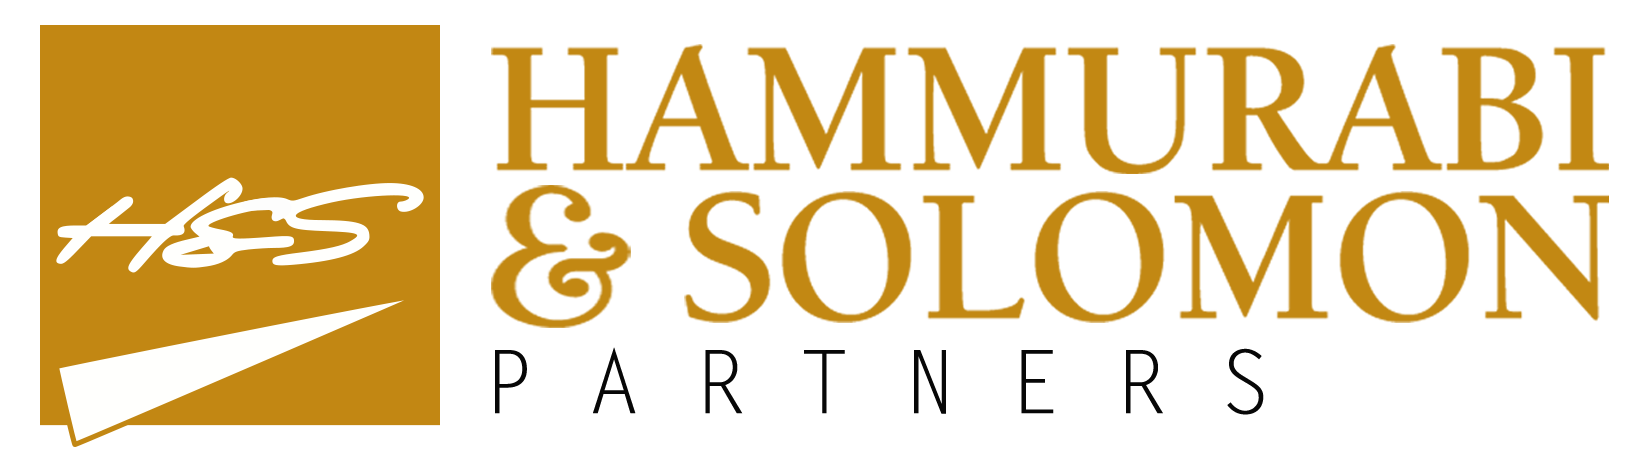 Hammurabi-Solomon